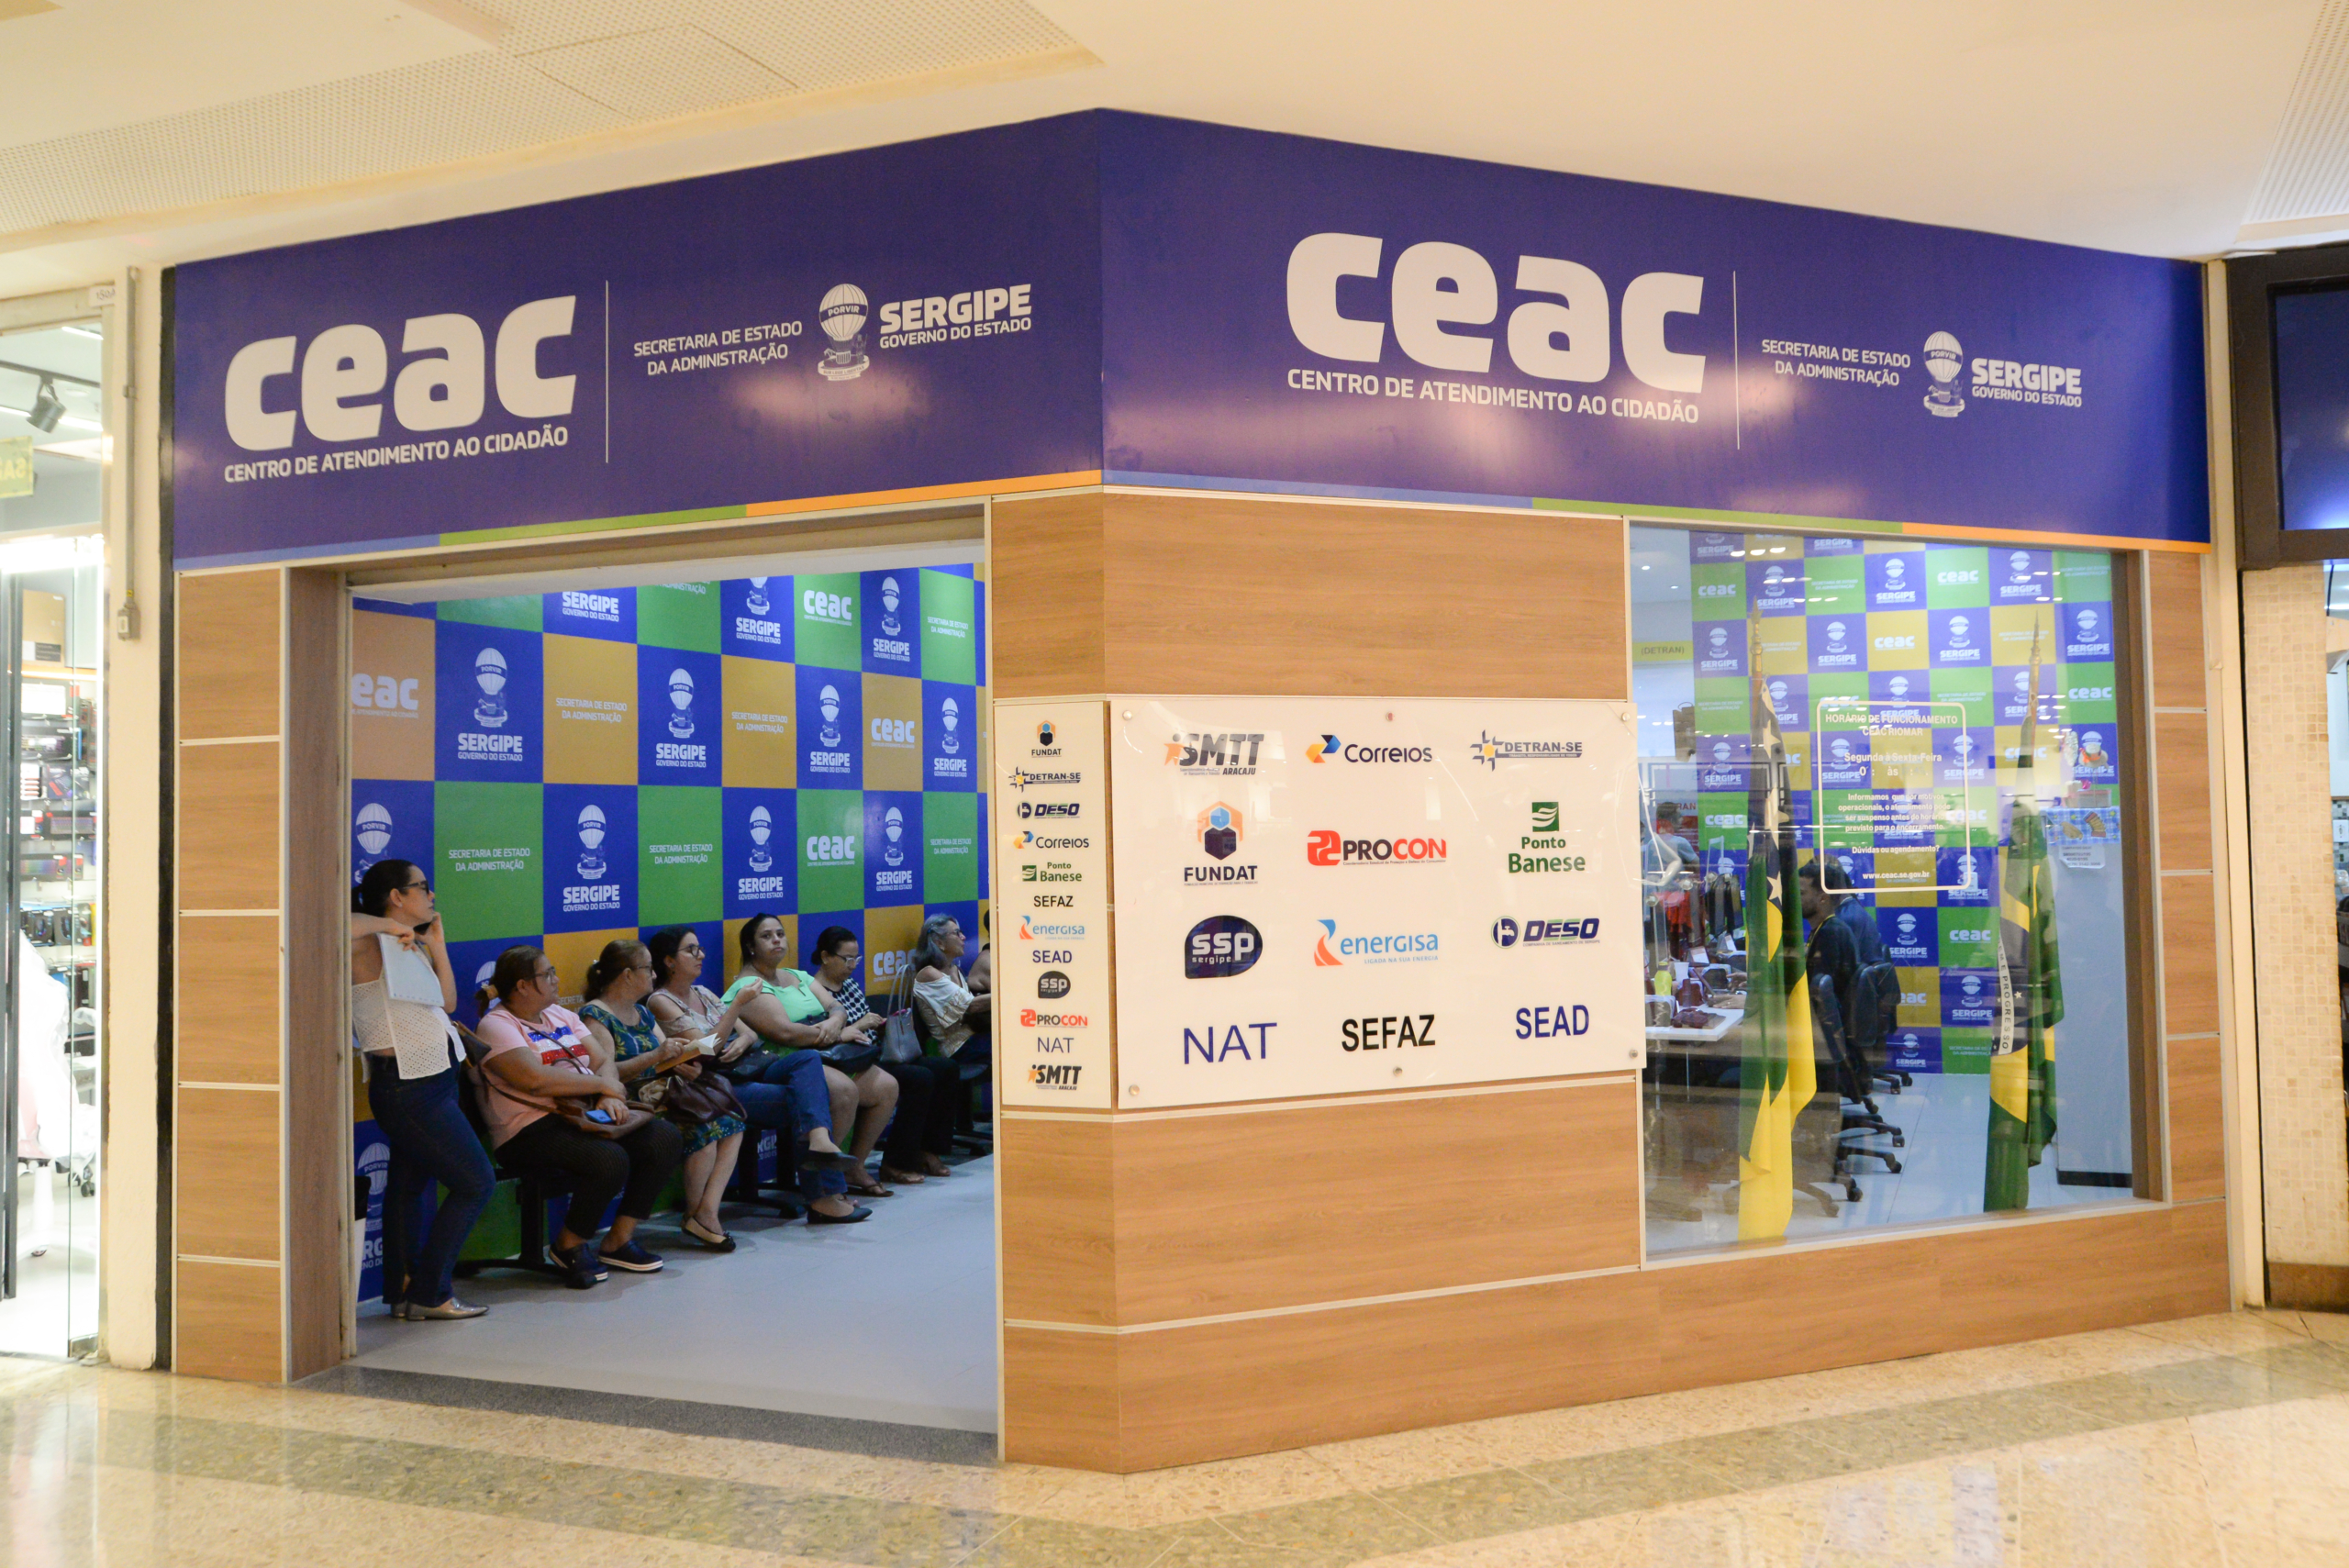 Governo de Sergipe planeja espaço exclusivo para atendimento de servidores públicos nos Ceacs